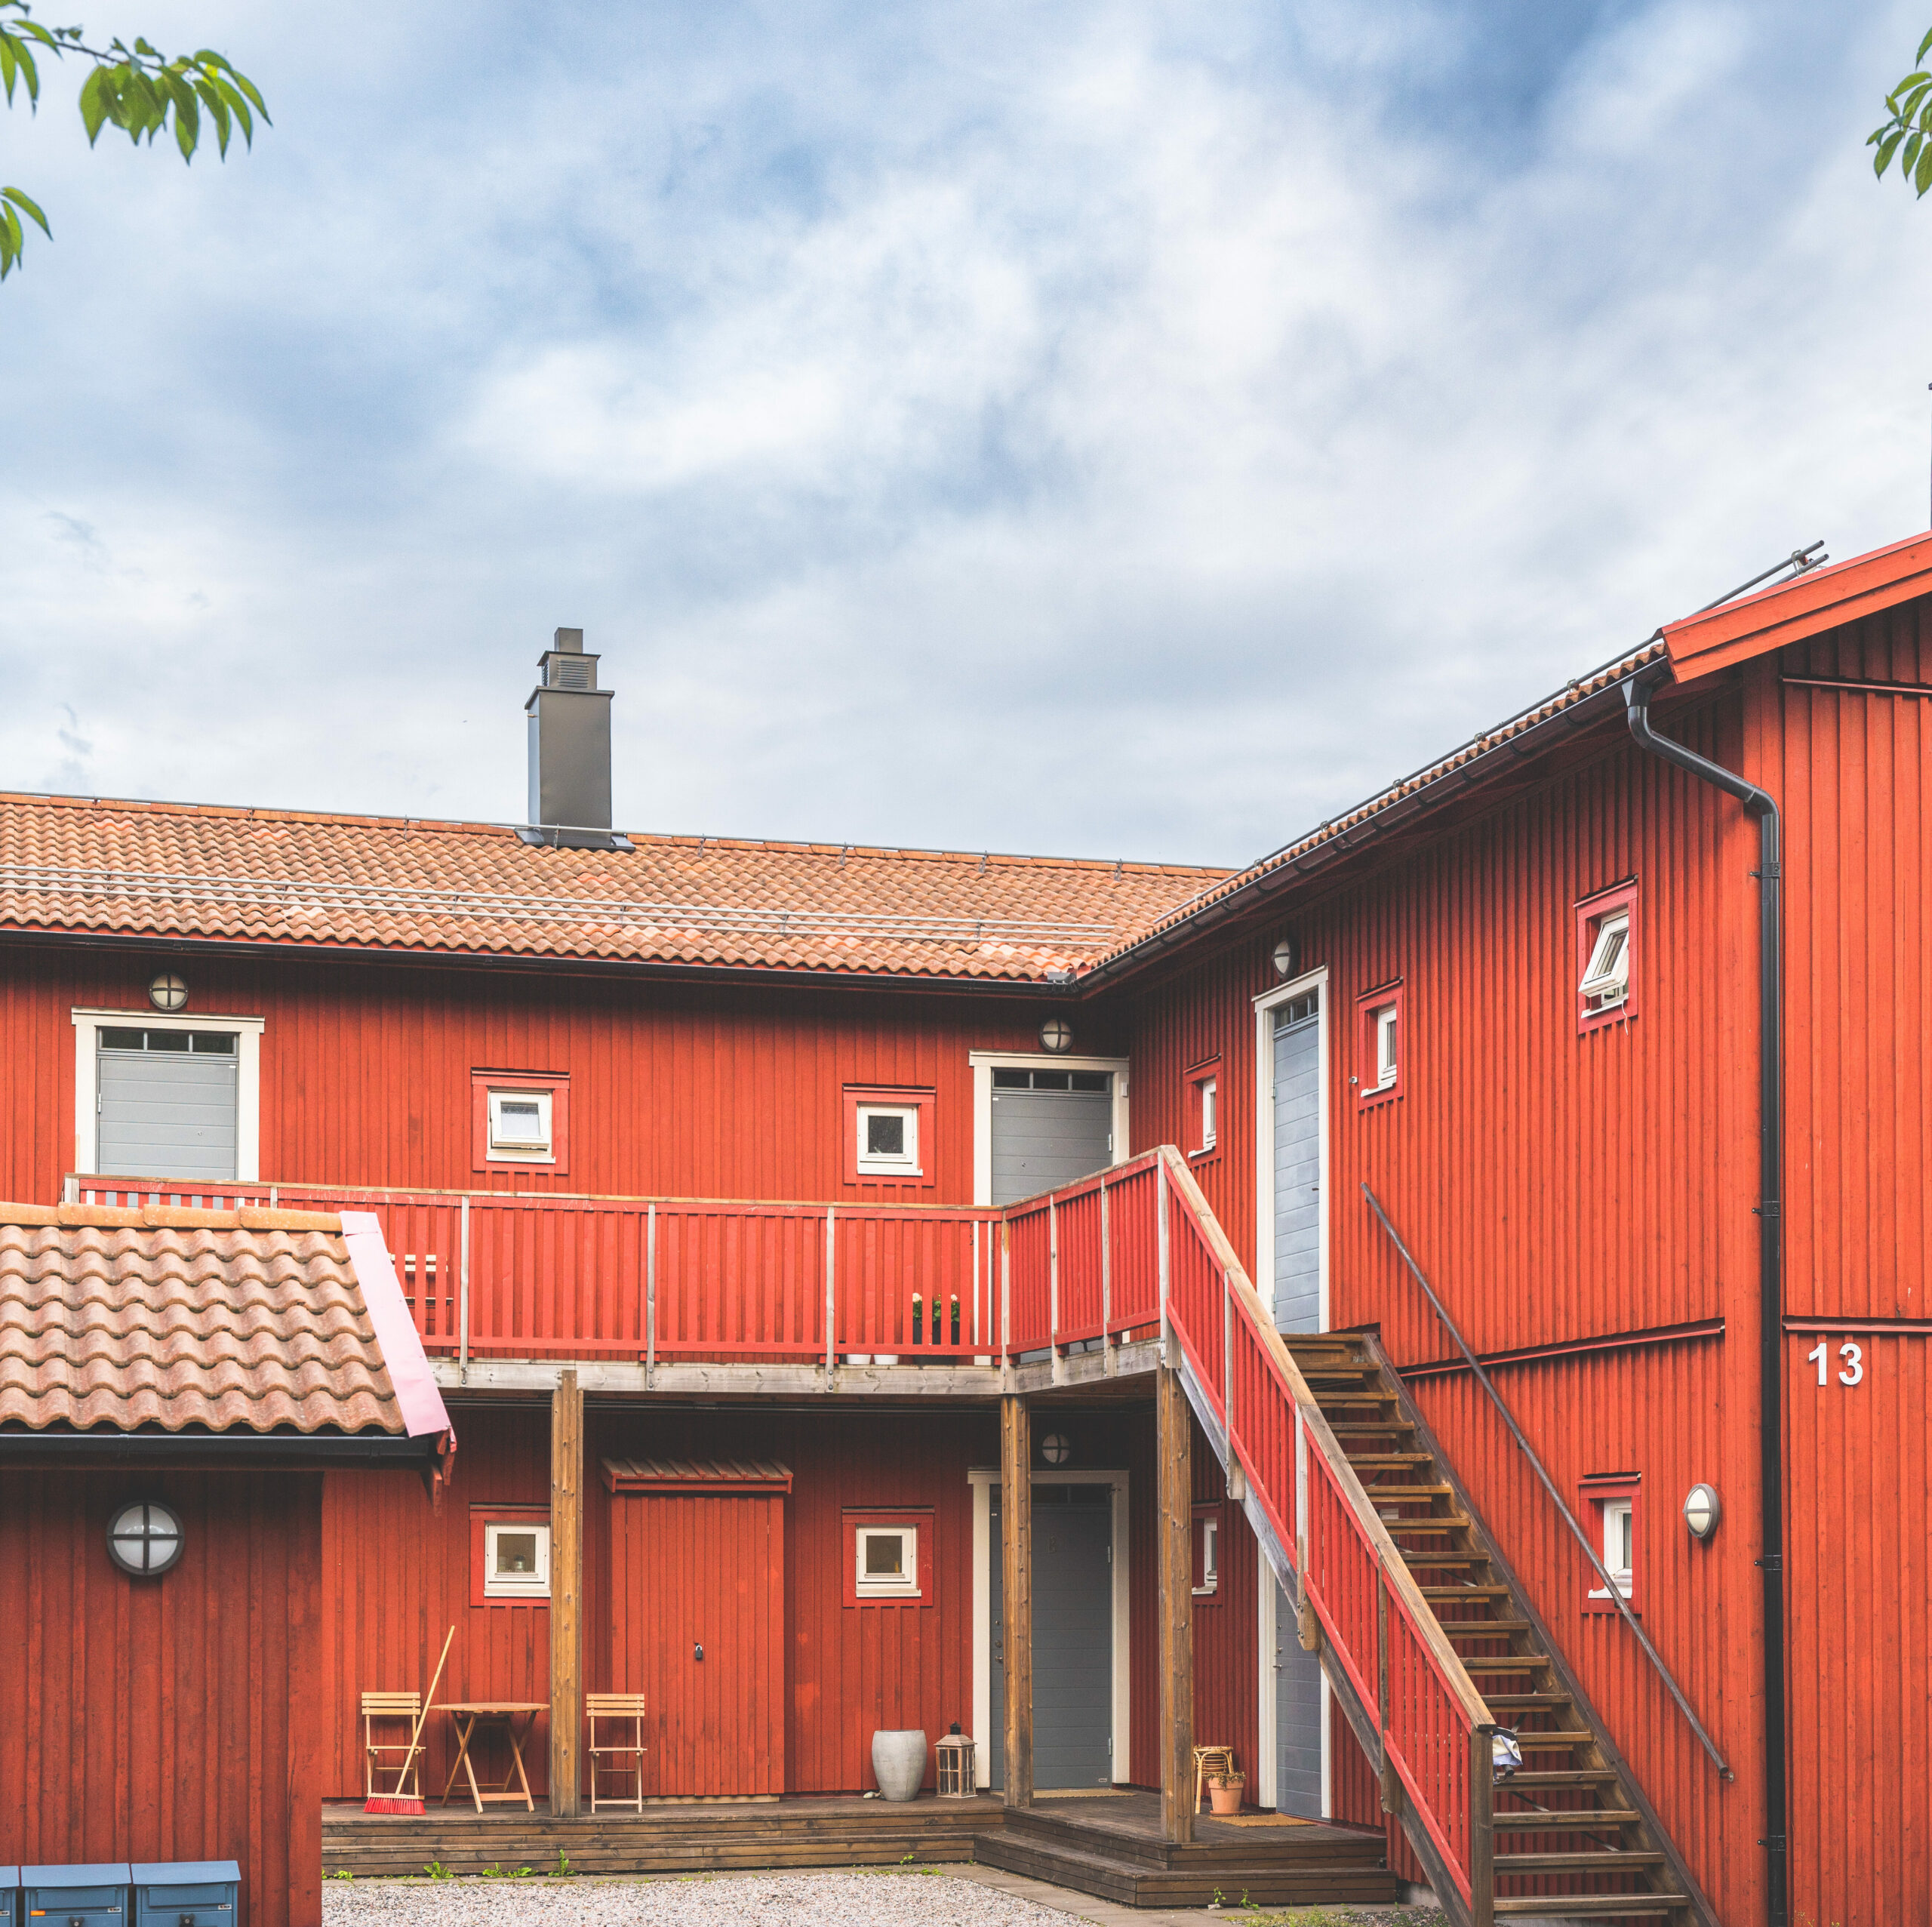 Housing in Sundsvall